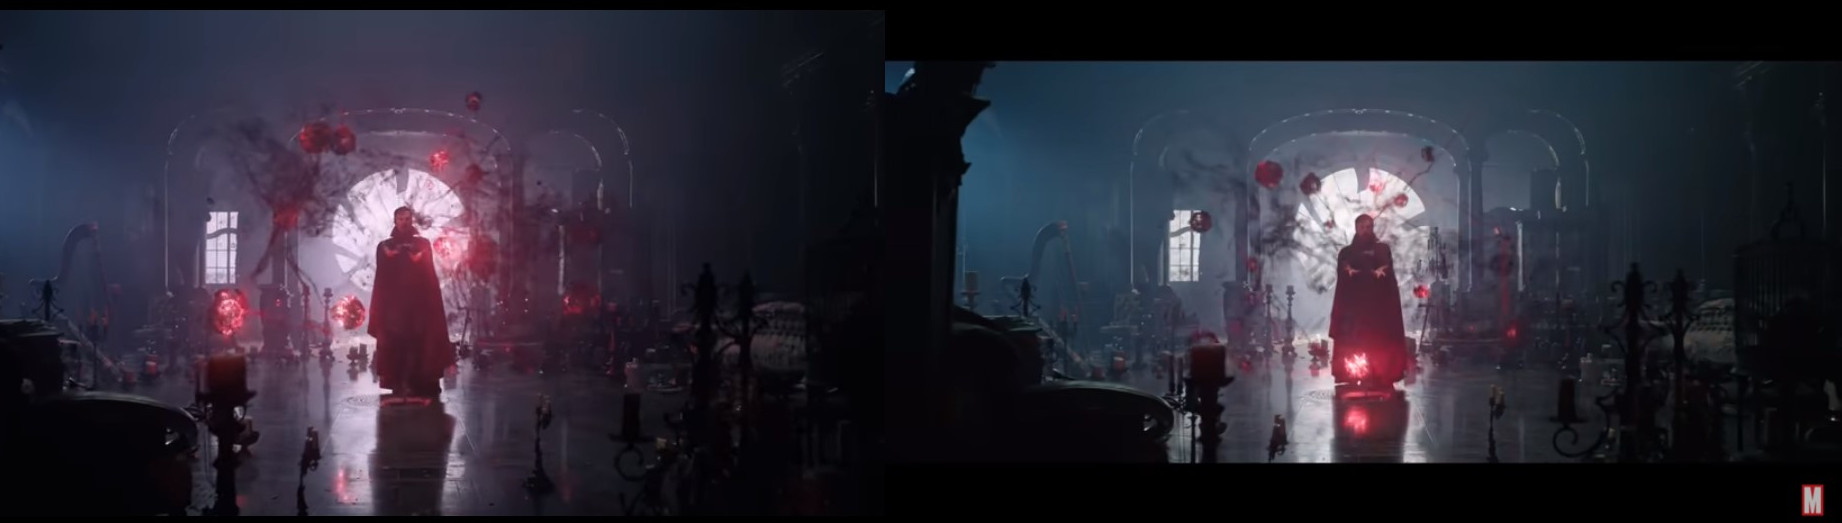 Doctor Strange IMAX trailer comparison